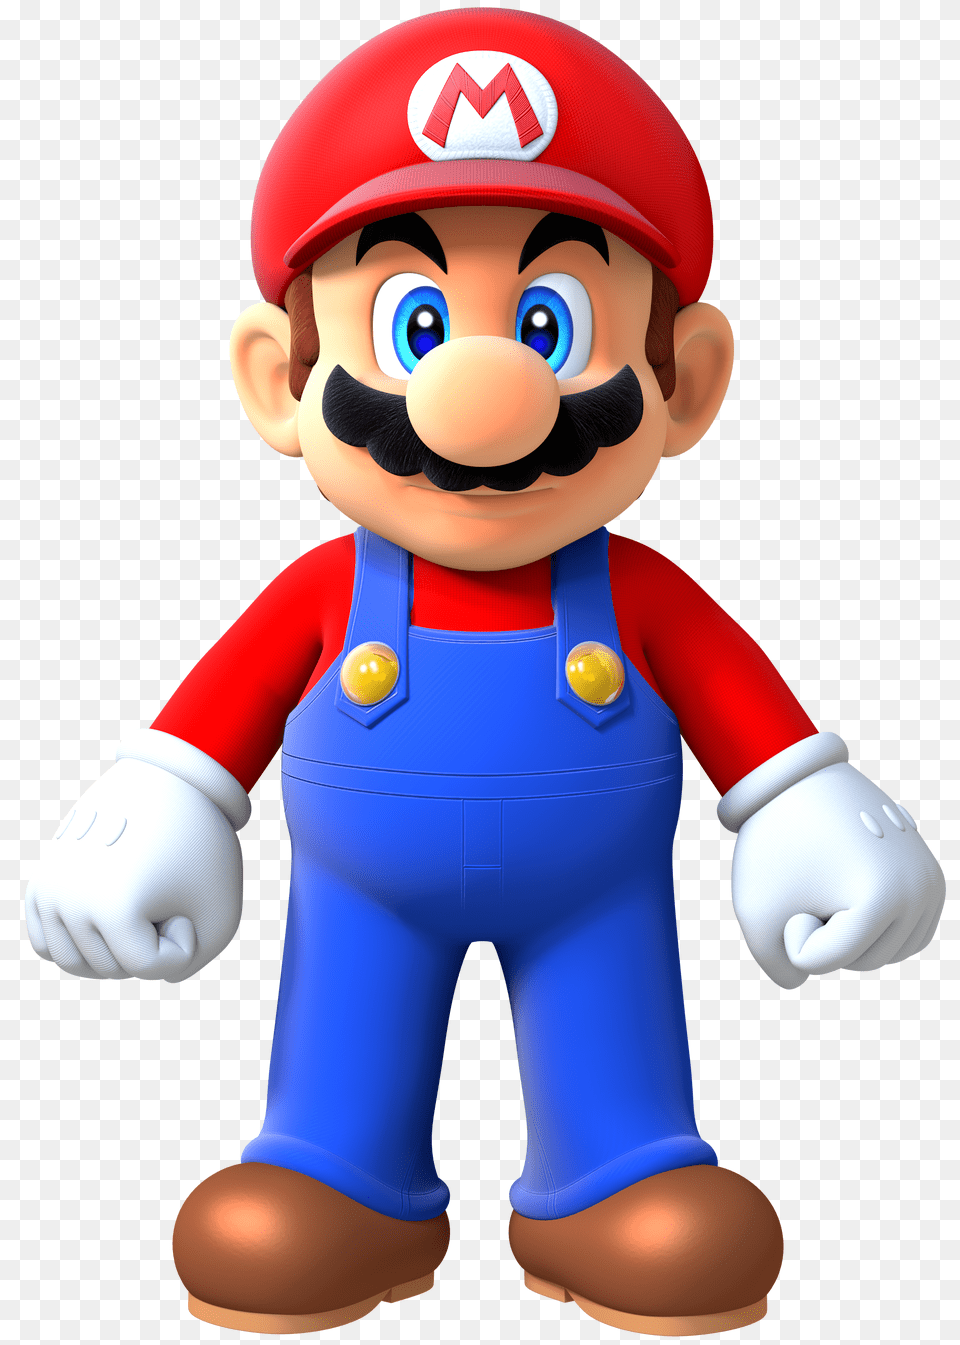 Mario Free Download Arts, Baby, Person, Game, Super Mario Png Image